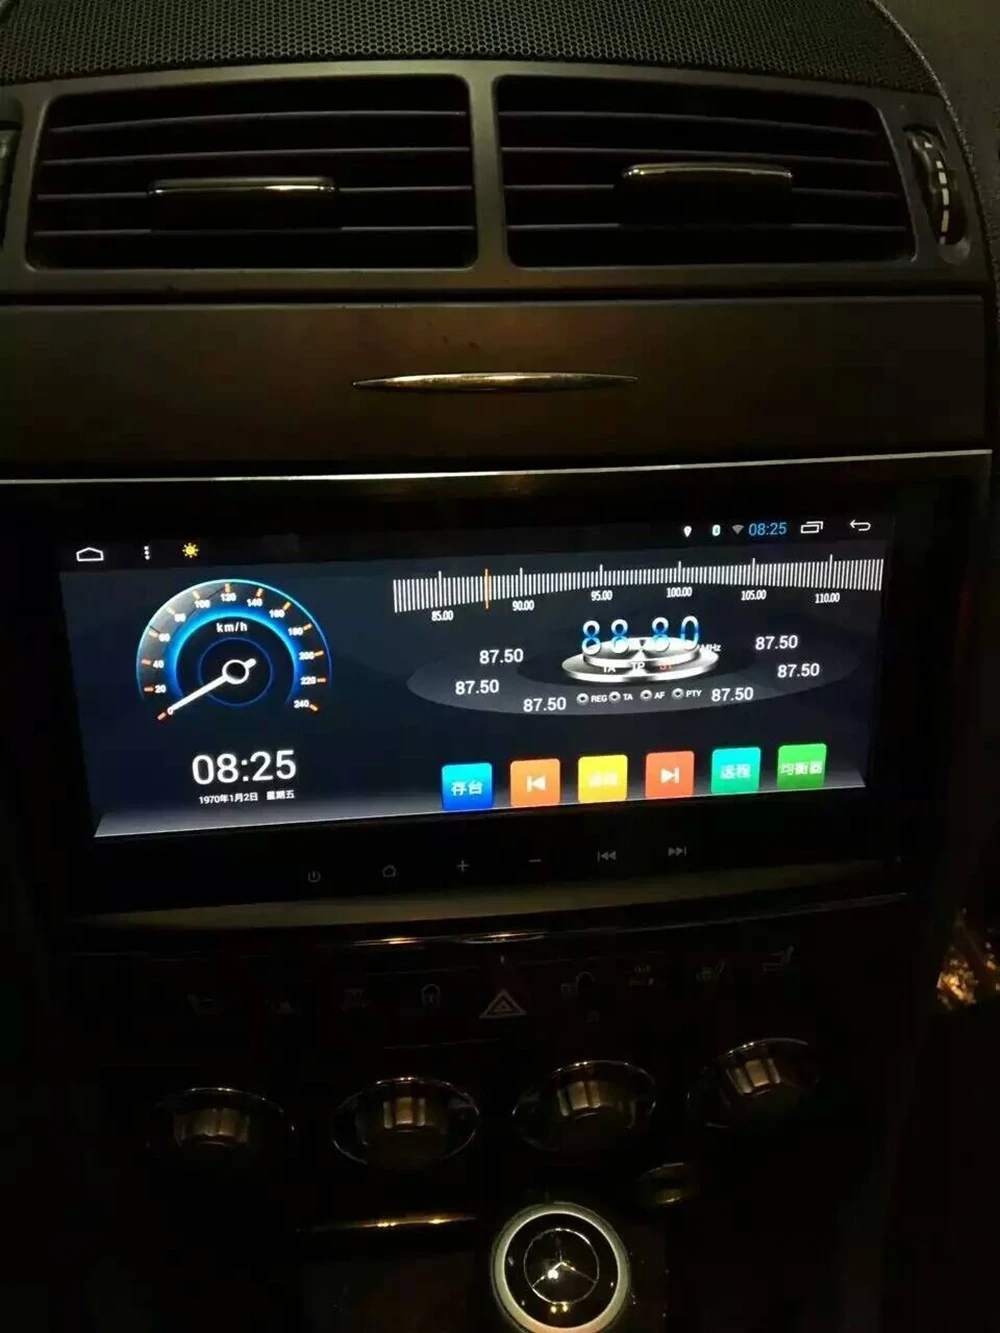 Flash Deal Lenvio RAM 2GB+32G 8.8"IPS Android 7.1 Auto Radio CAR GPS DVD player For Mercedes Benz SLK R171 W171 SLK200 SLK280 SLK300 SLK350 0